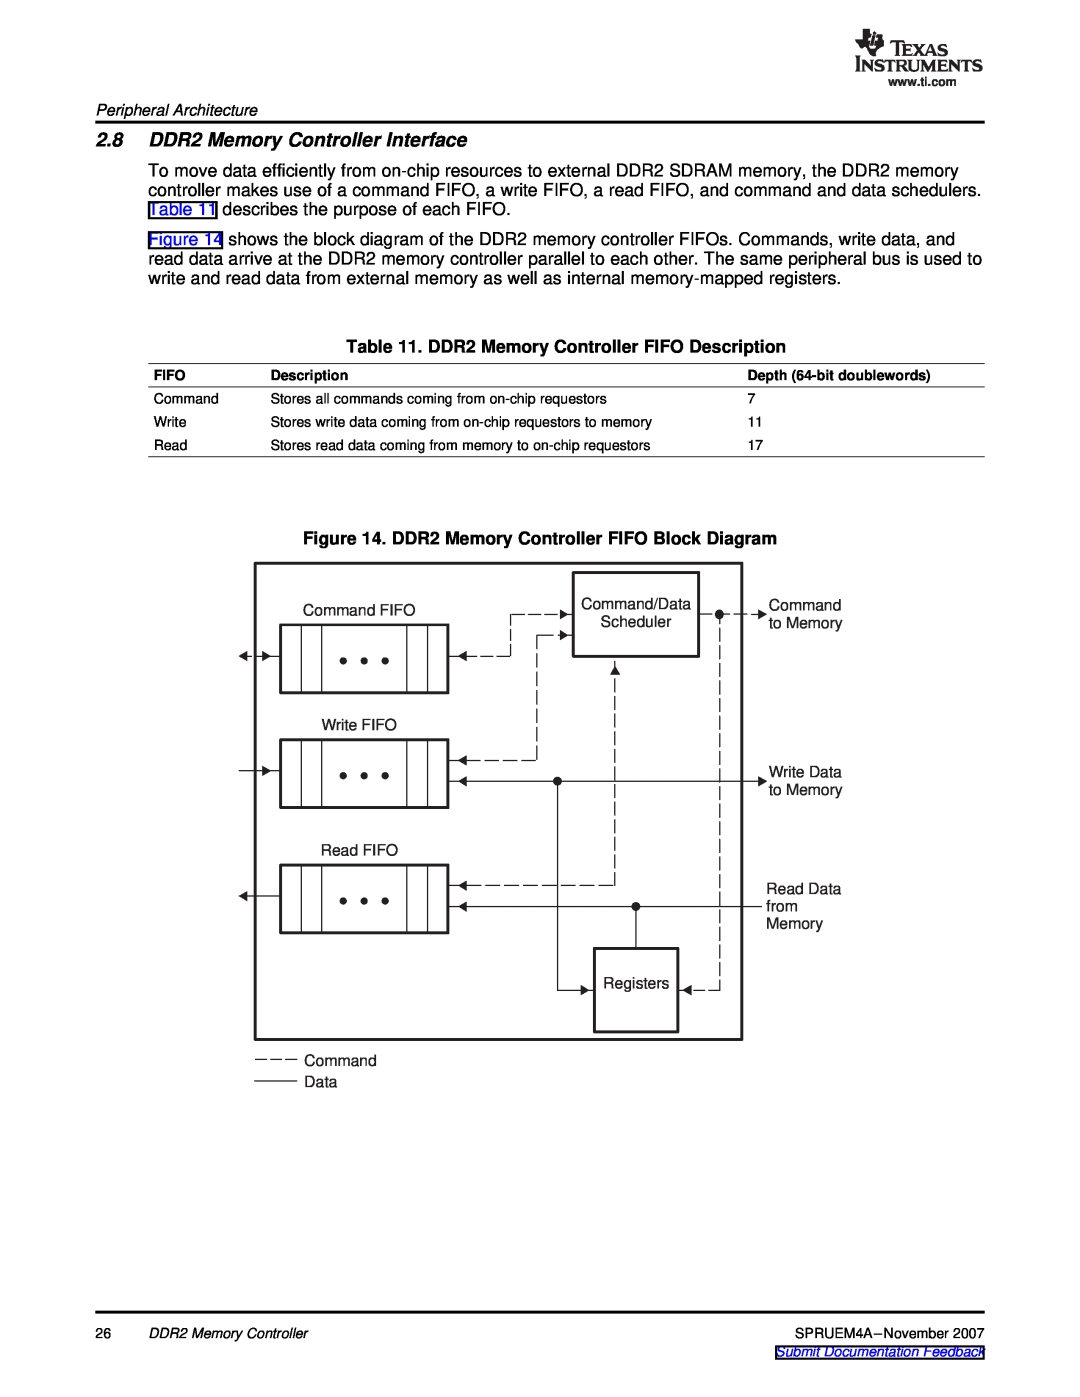 Texas Instruments TMS320C642x DSP manual 2.8 DDR2 Memory Controller Interface, DDR2 Memory Controller FIFO Description 